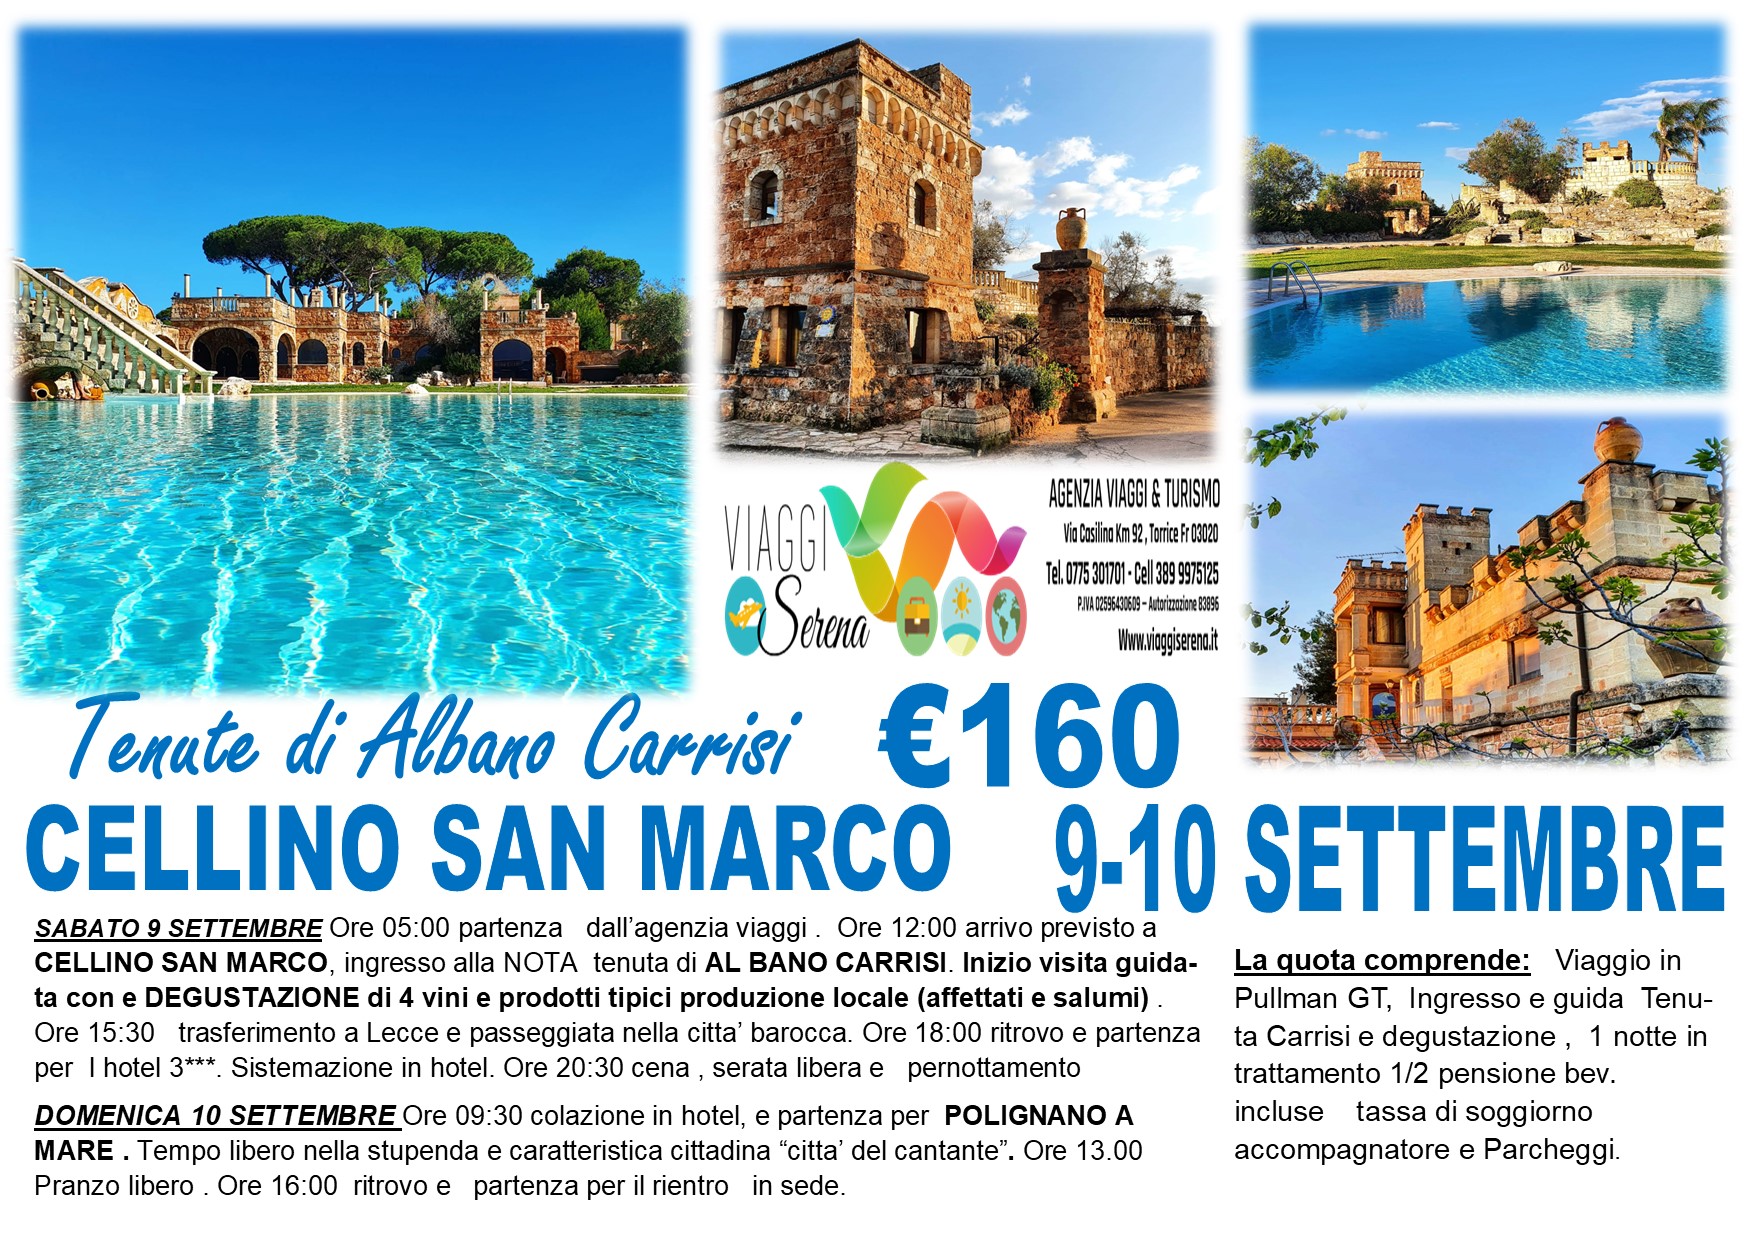 Viaggi di gruppo: Cellino San Marco, Lecce & Polignano a Mare 9-10 Settembre  € 160,00